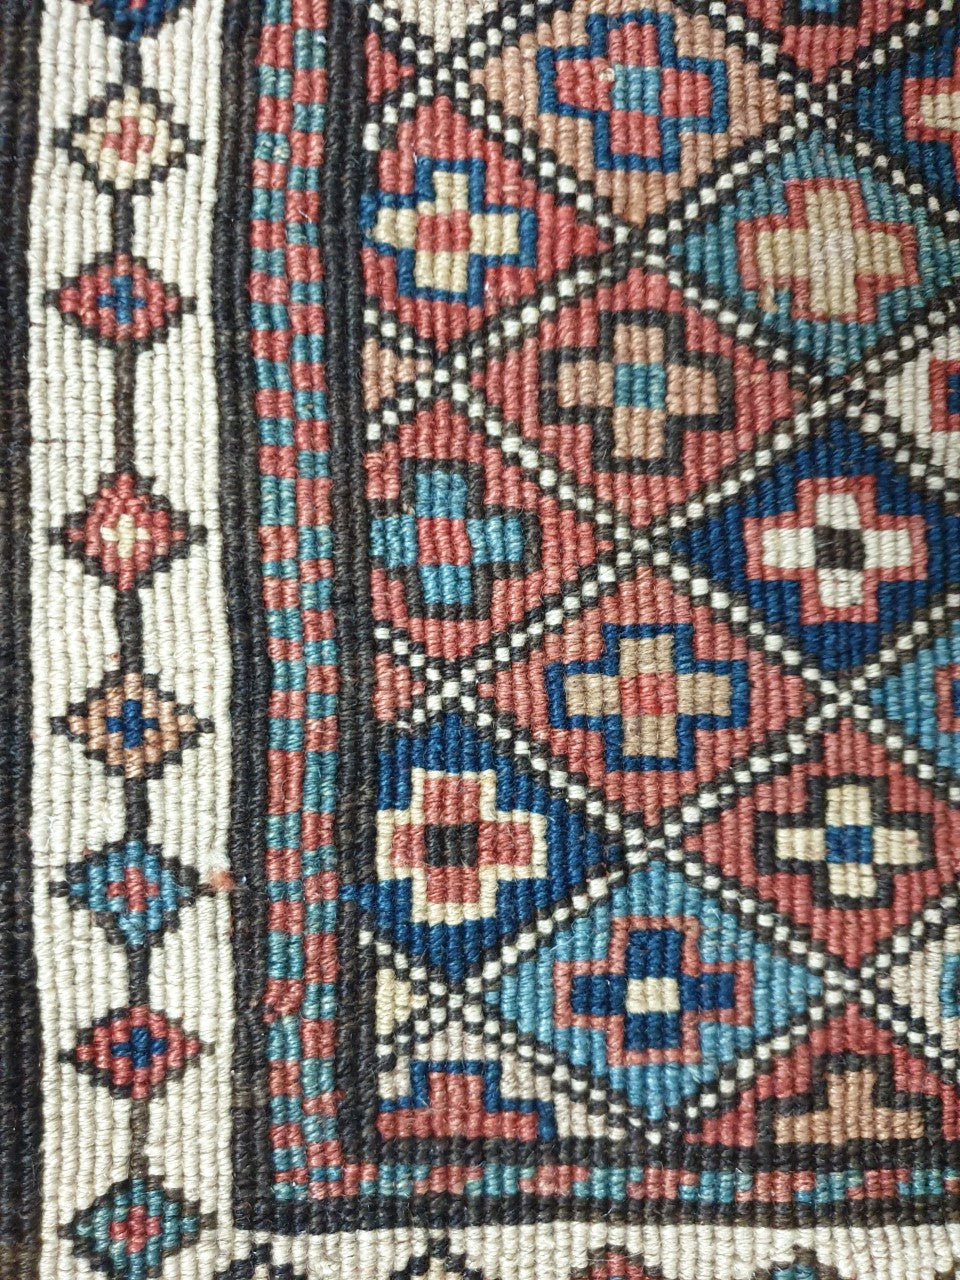 Antique Caucasian Sumak Shasavan bag